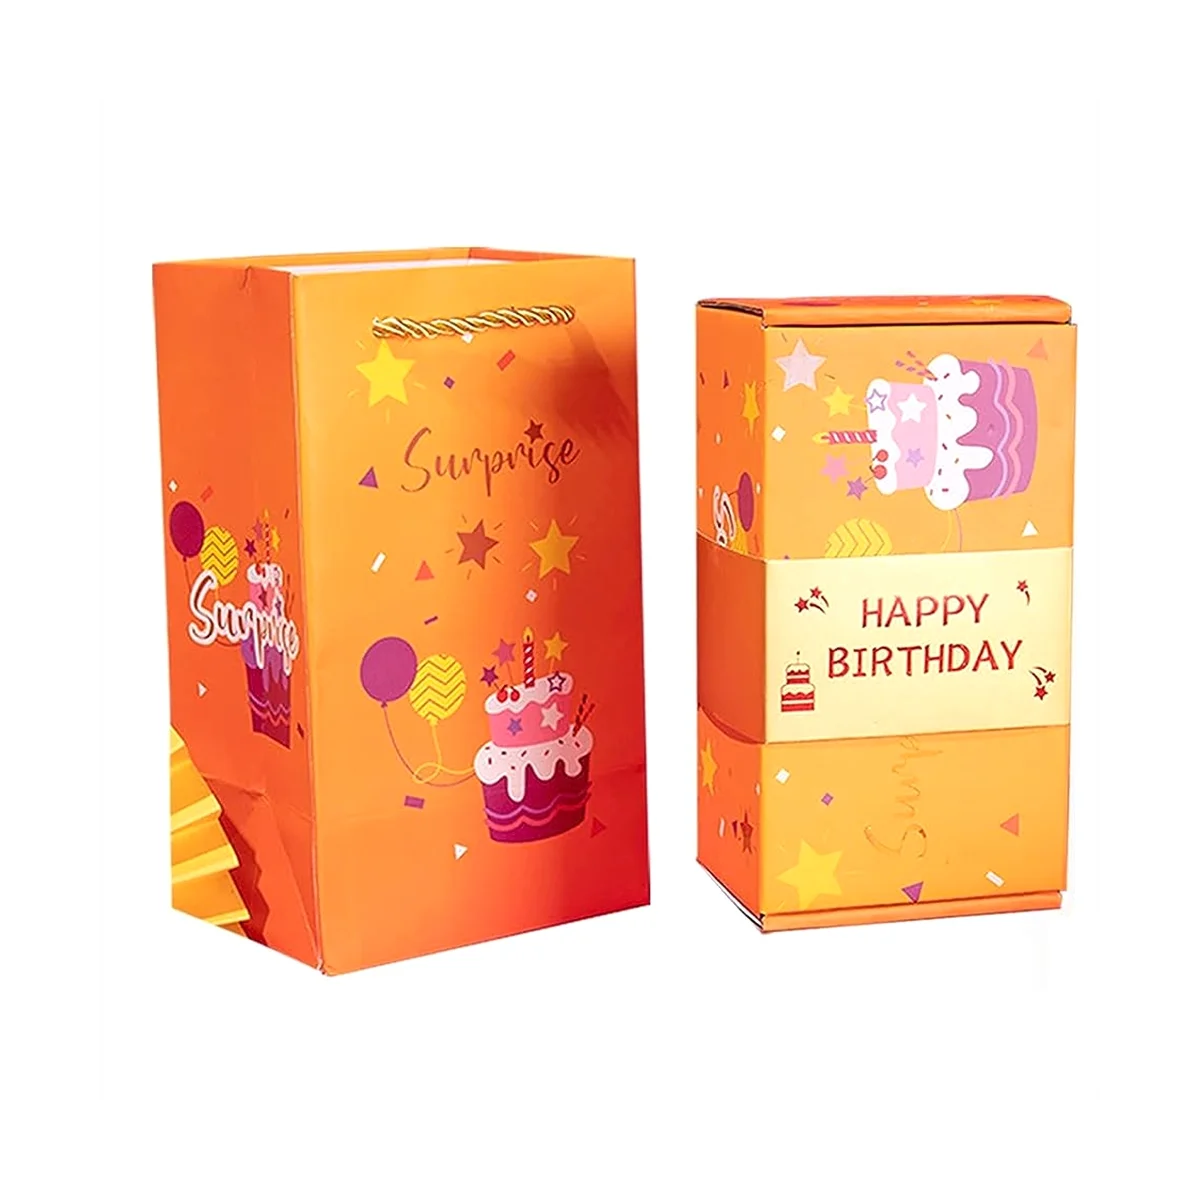 Взрывающаяся подарочная коробка, всплывающая коробка для розыгрышей на день рождения, подарочная коробка для рулонов денег для подарка наличными, китайский красный конверт C